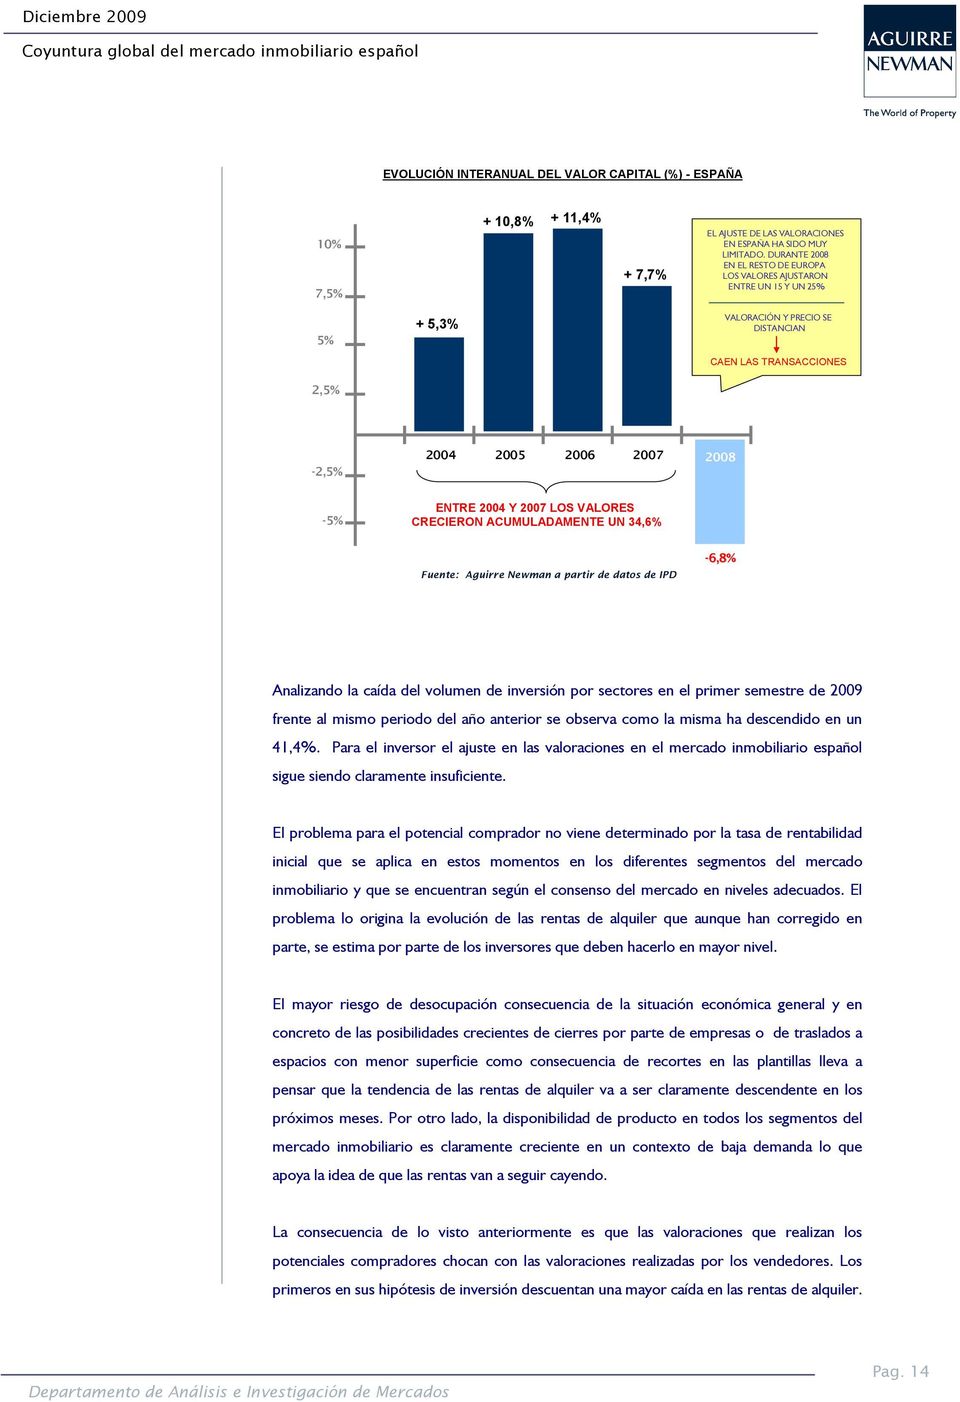 2007 LOS VALORES CRECIERON ACUMULADAMENTE UN 34,6% Fuente: Aguirre Newman a partir de datos de IPD -6,8% Analizando la caída del volumen de inversión por sectores en el primer semestre de 2009 frente